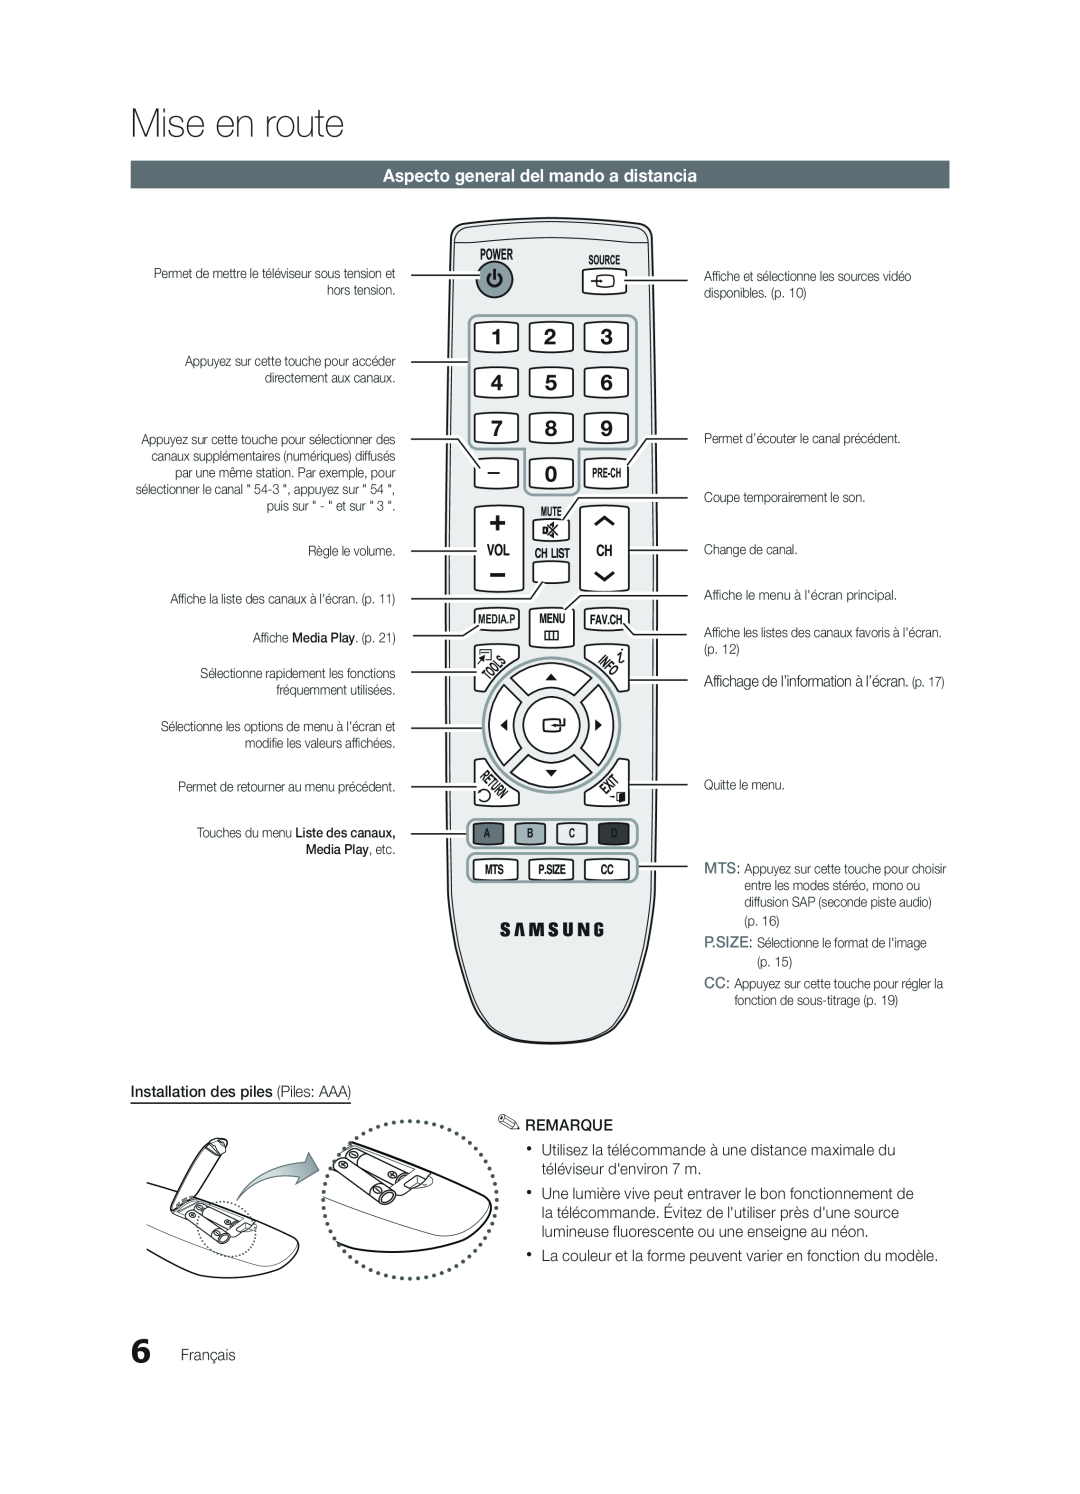 Samsung BN68-02620B-06 Aspecto general del mando a distancia, Mise en route, Affichage de l’information à l’écran. p 